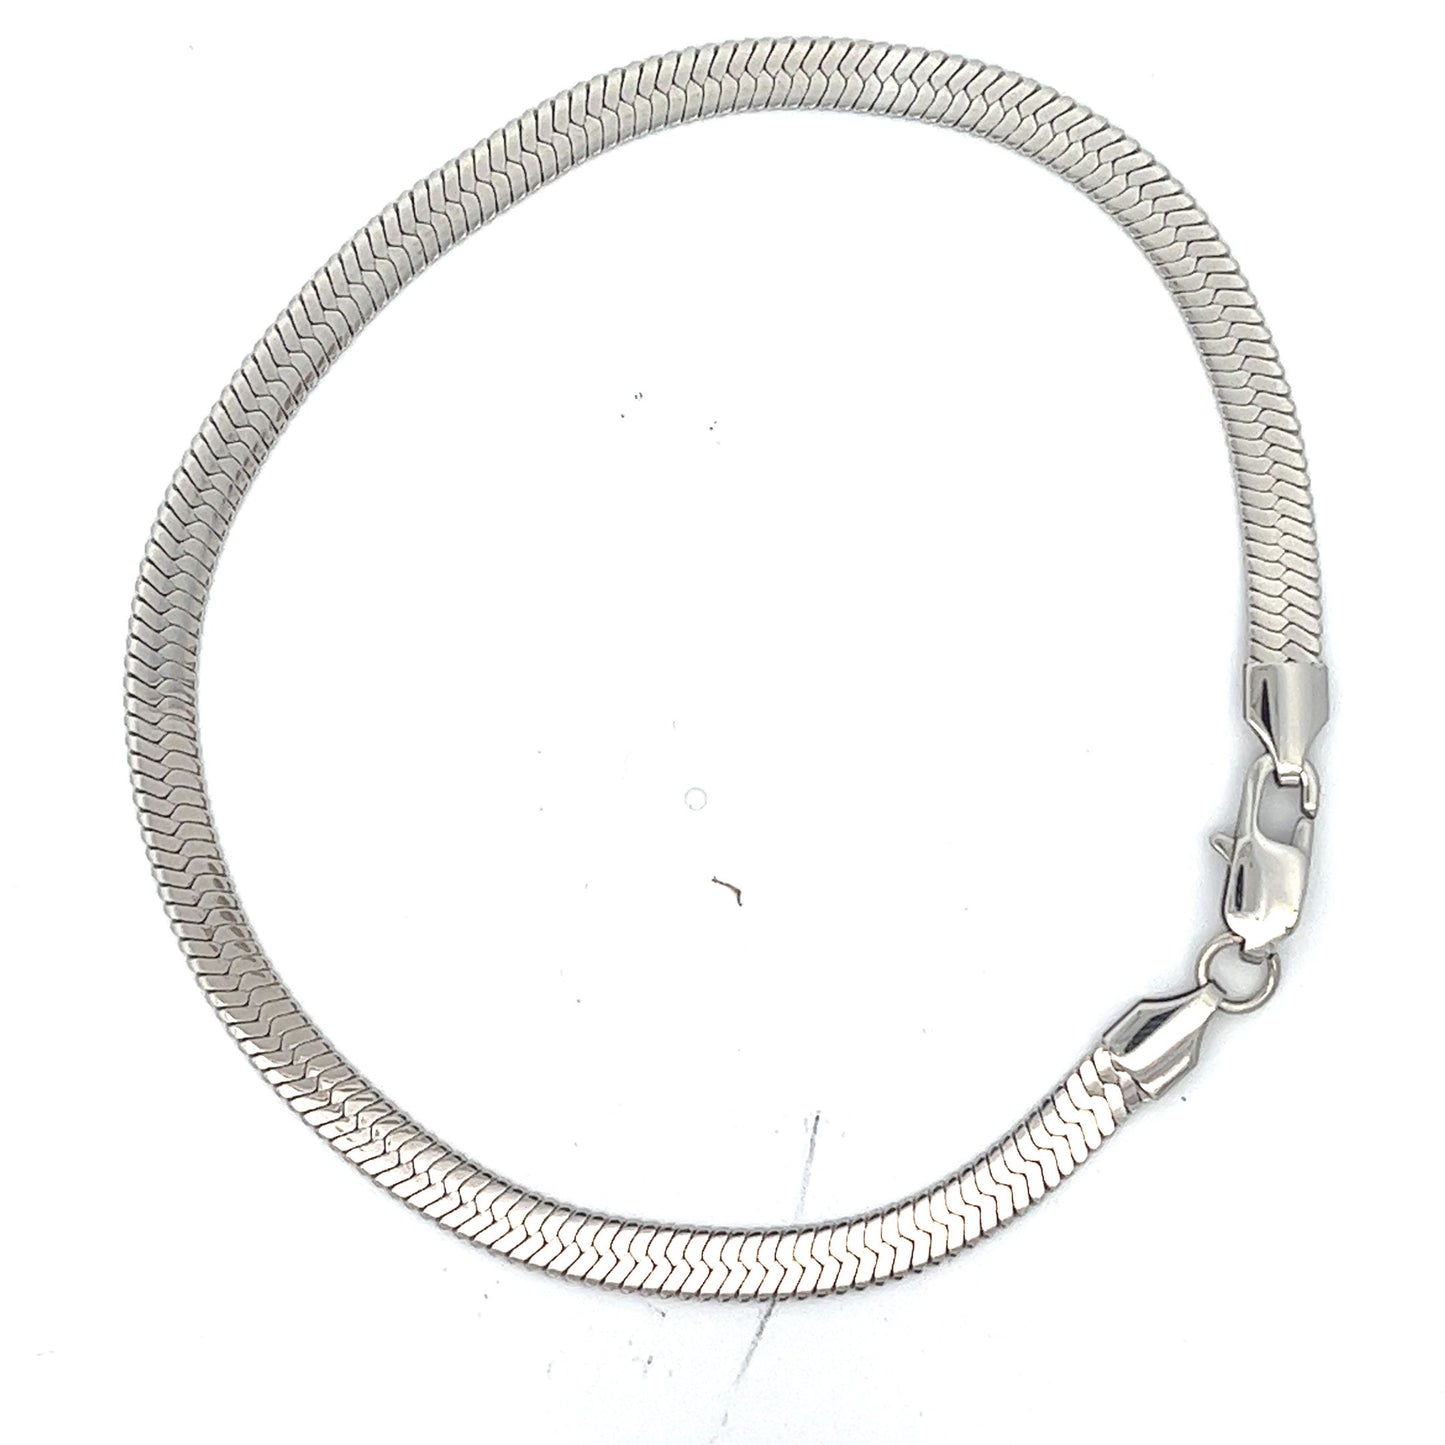 5mm Unisex Stainless Steel Herringbone Chain